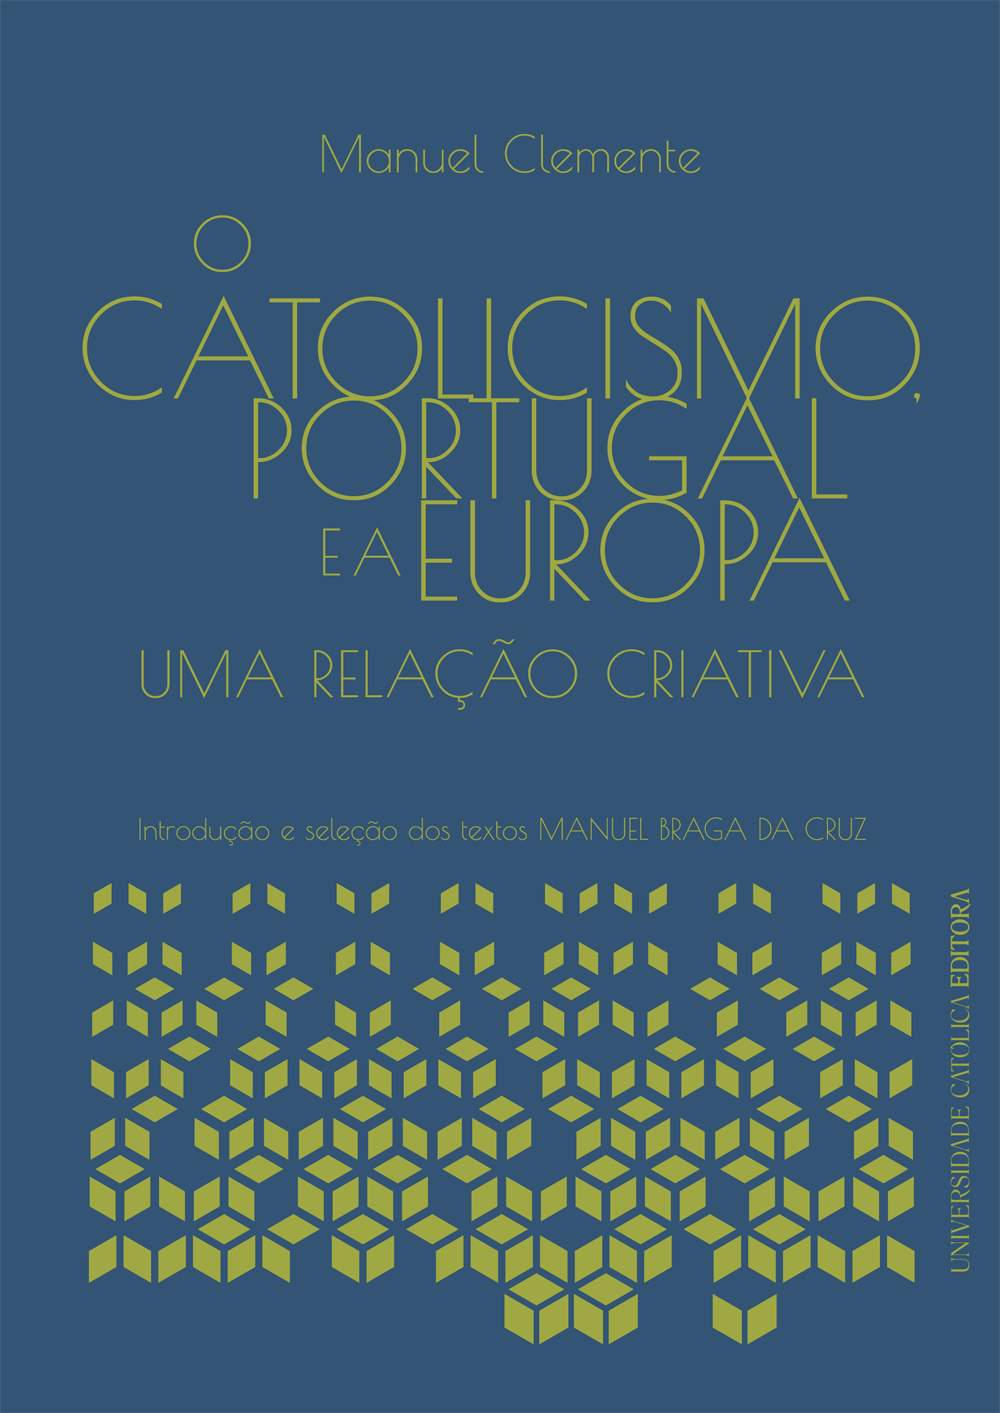 O CATOLICISMO, PORTUGAL E A EUROPA - Uma relação criativa - Universidade Católica Editora